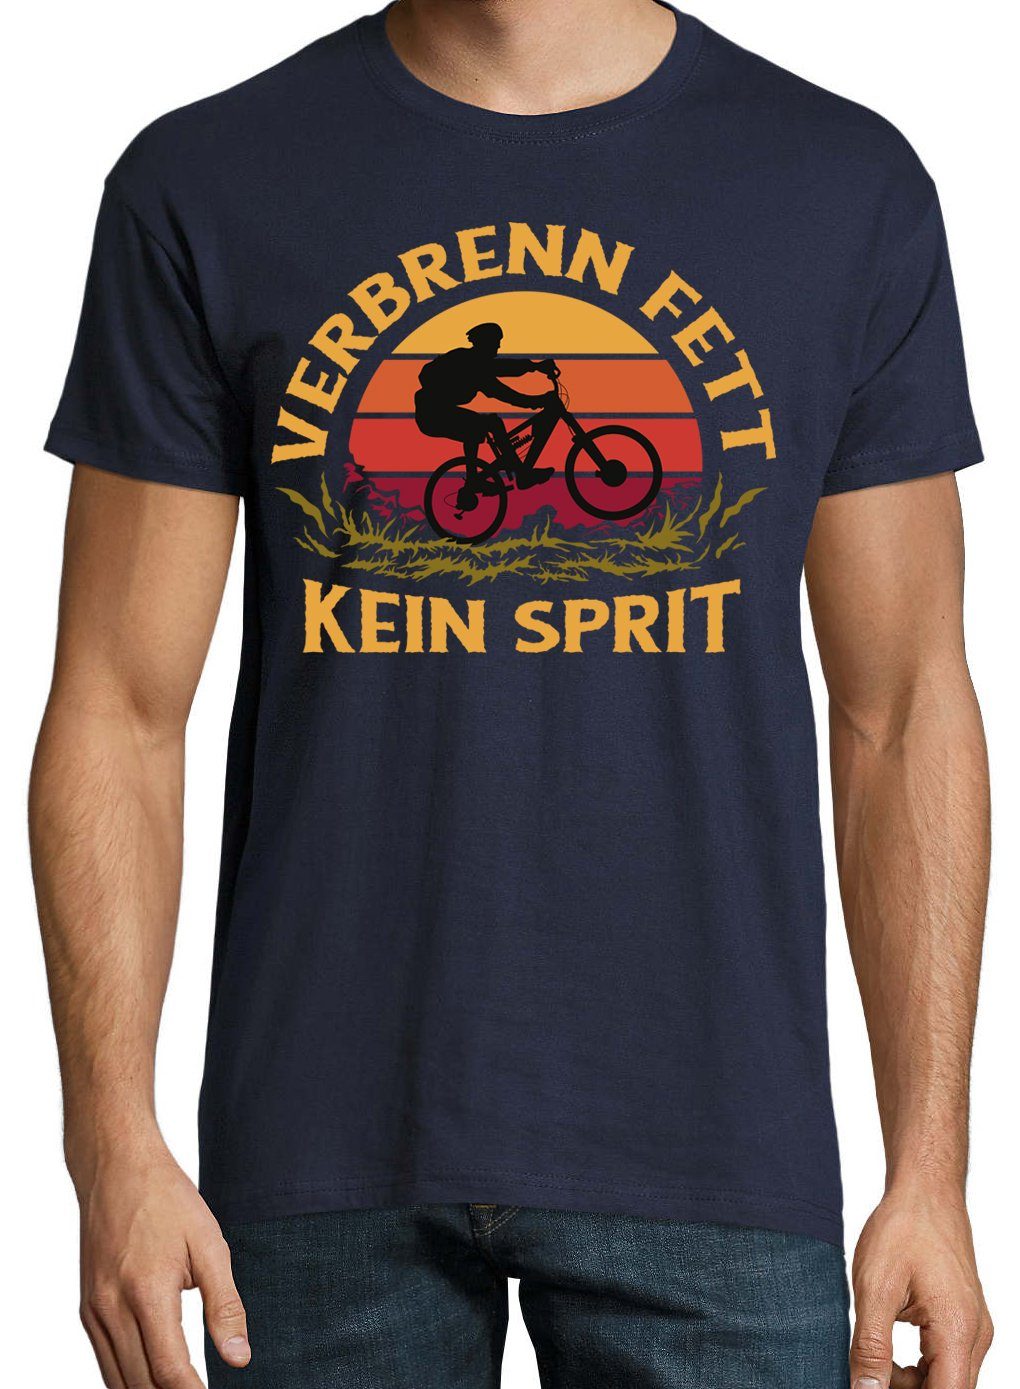 Navyblau T-Shirt mit T-Shirt Herren Spruch Designz Youth "VerbrennFett" lustigem